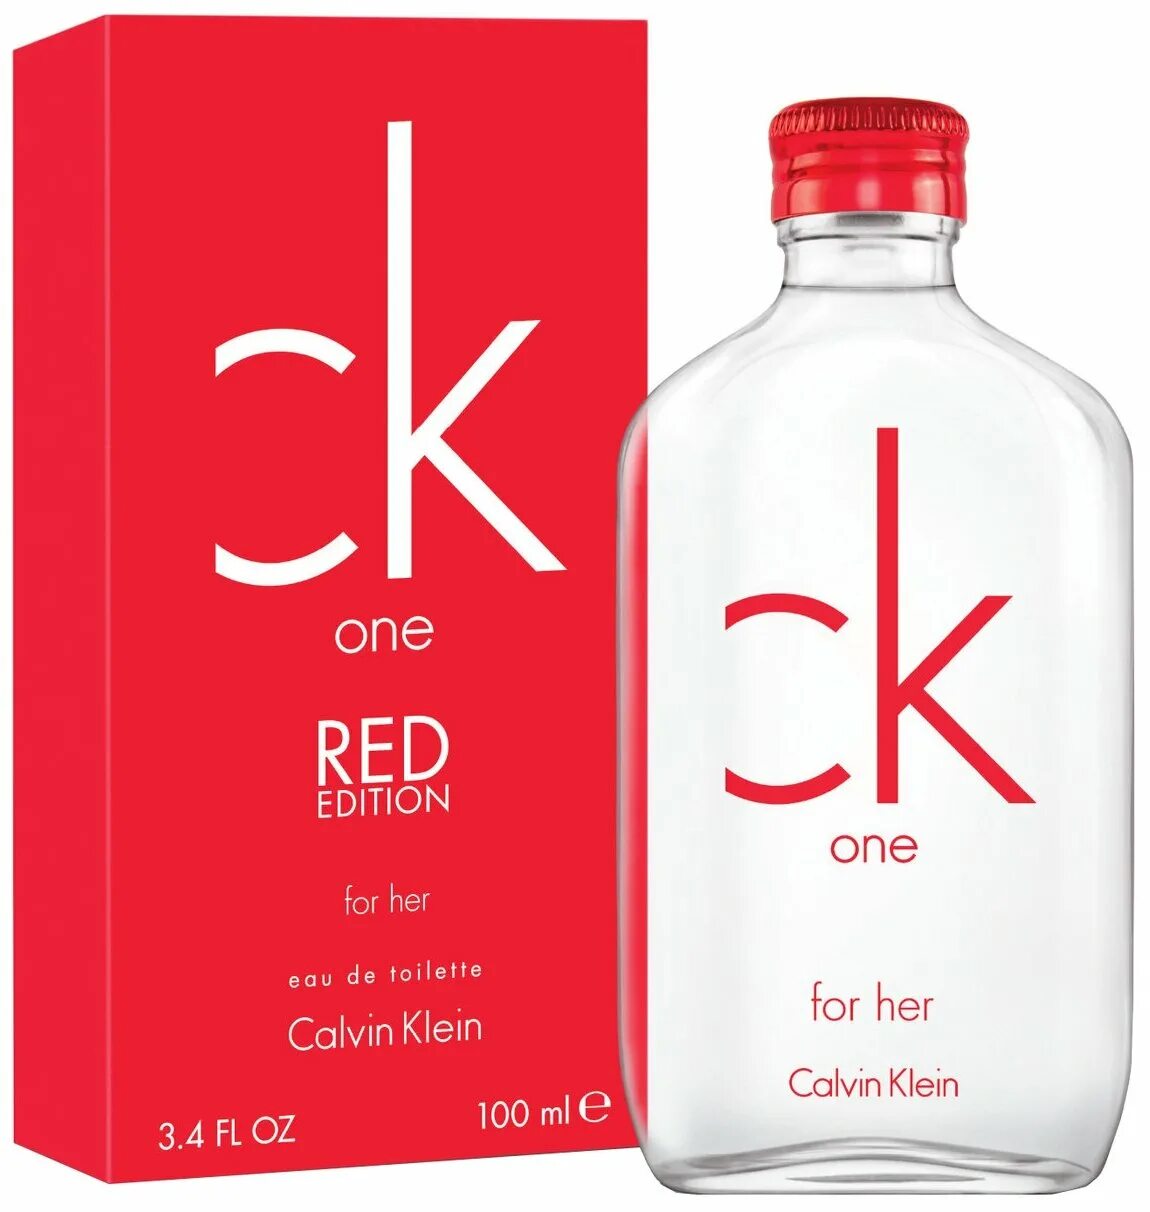 CK one Calvin Klein. Calvin Klein one Red Edition Perfume. Calvin Klein one EDT 100ml. Туалетная вода Calvin Klein CK one.